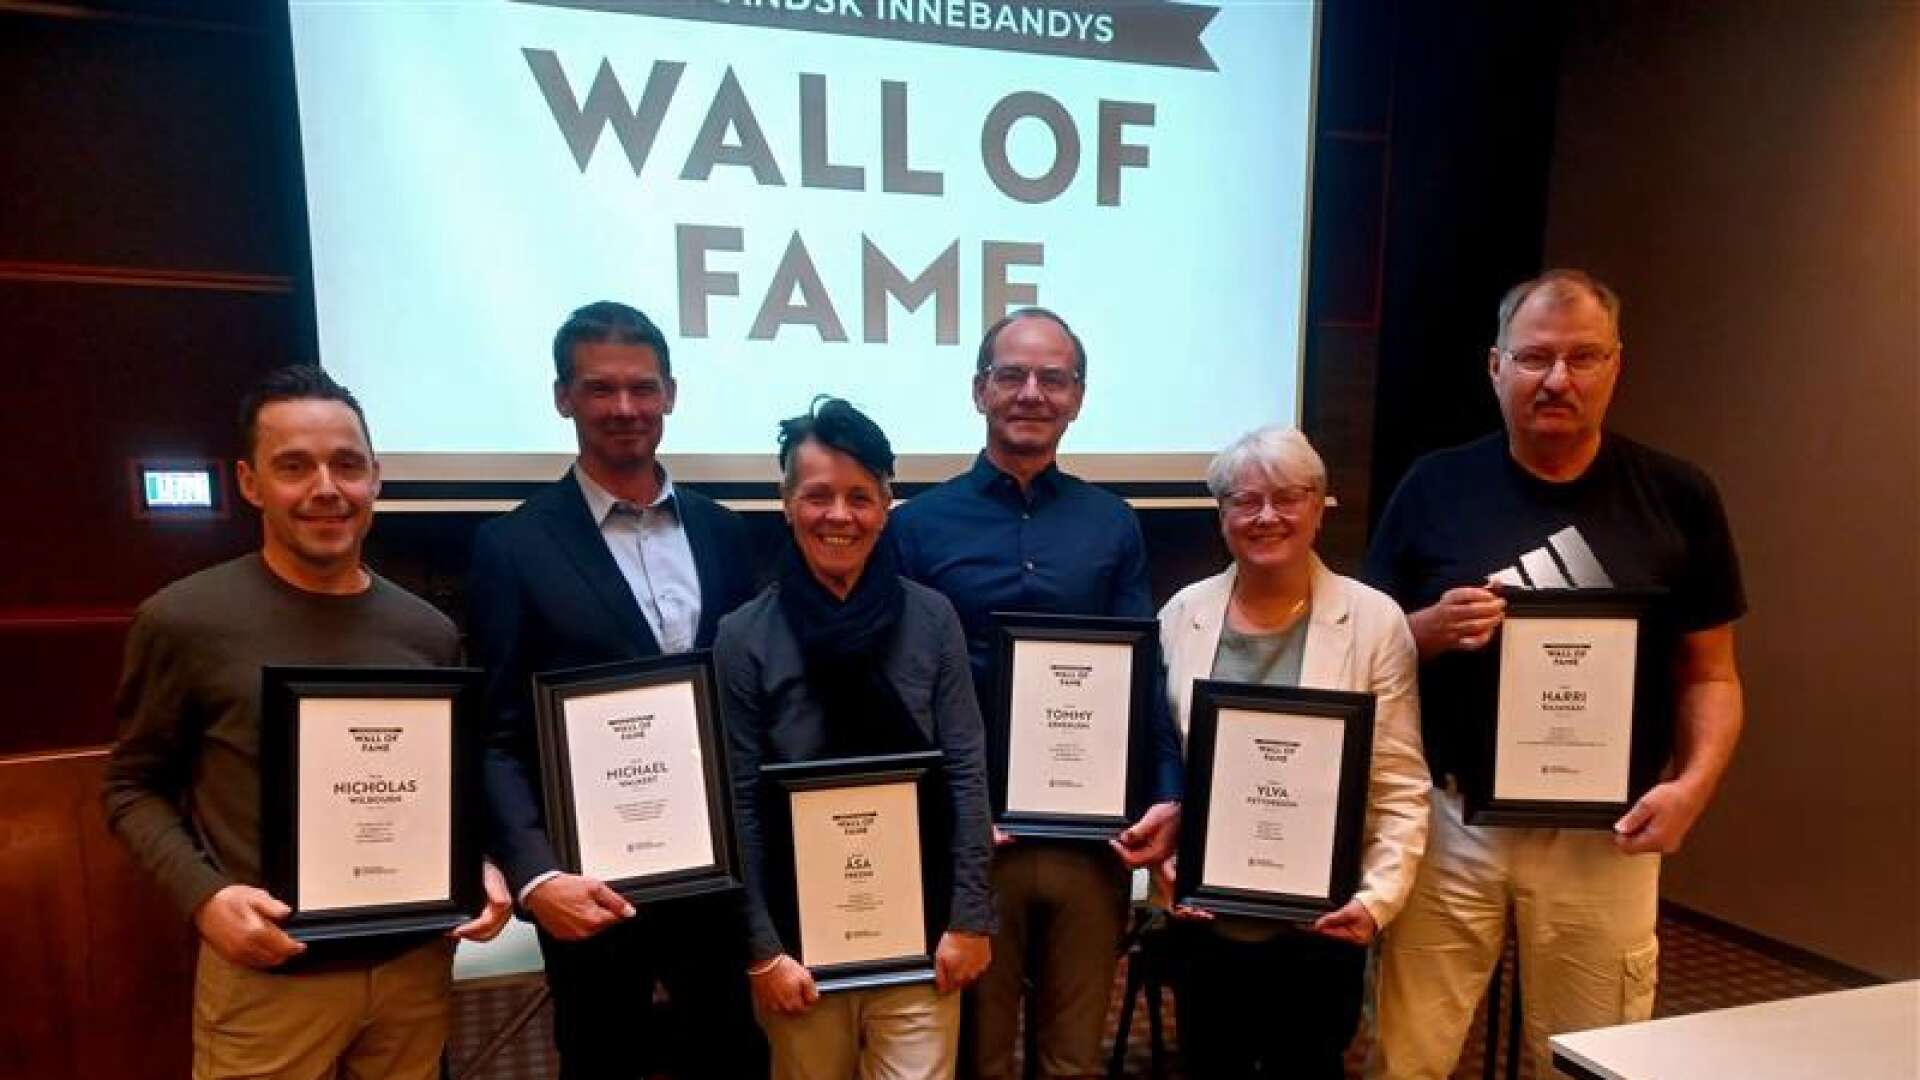 Sex nya namn på värmländsk innebandys Wall of Fame. från vänster: Nicholas Wilbourn, Michael Walkert, Åsa Fredin, Tommy Ernerudh, Ylva Pettersson och Harri Rajamäki. 